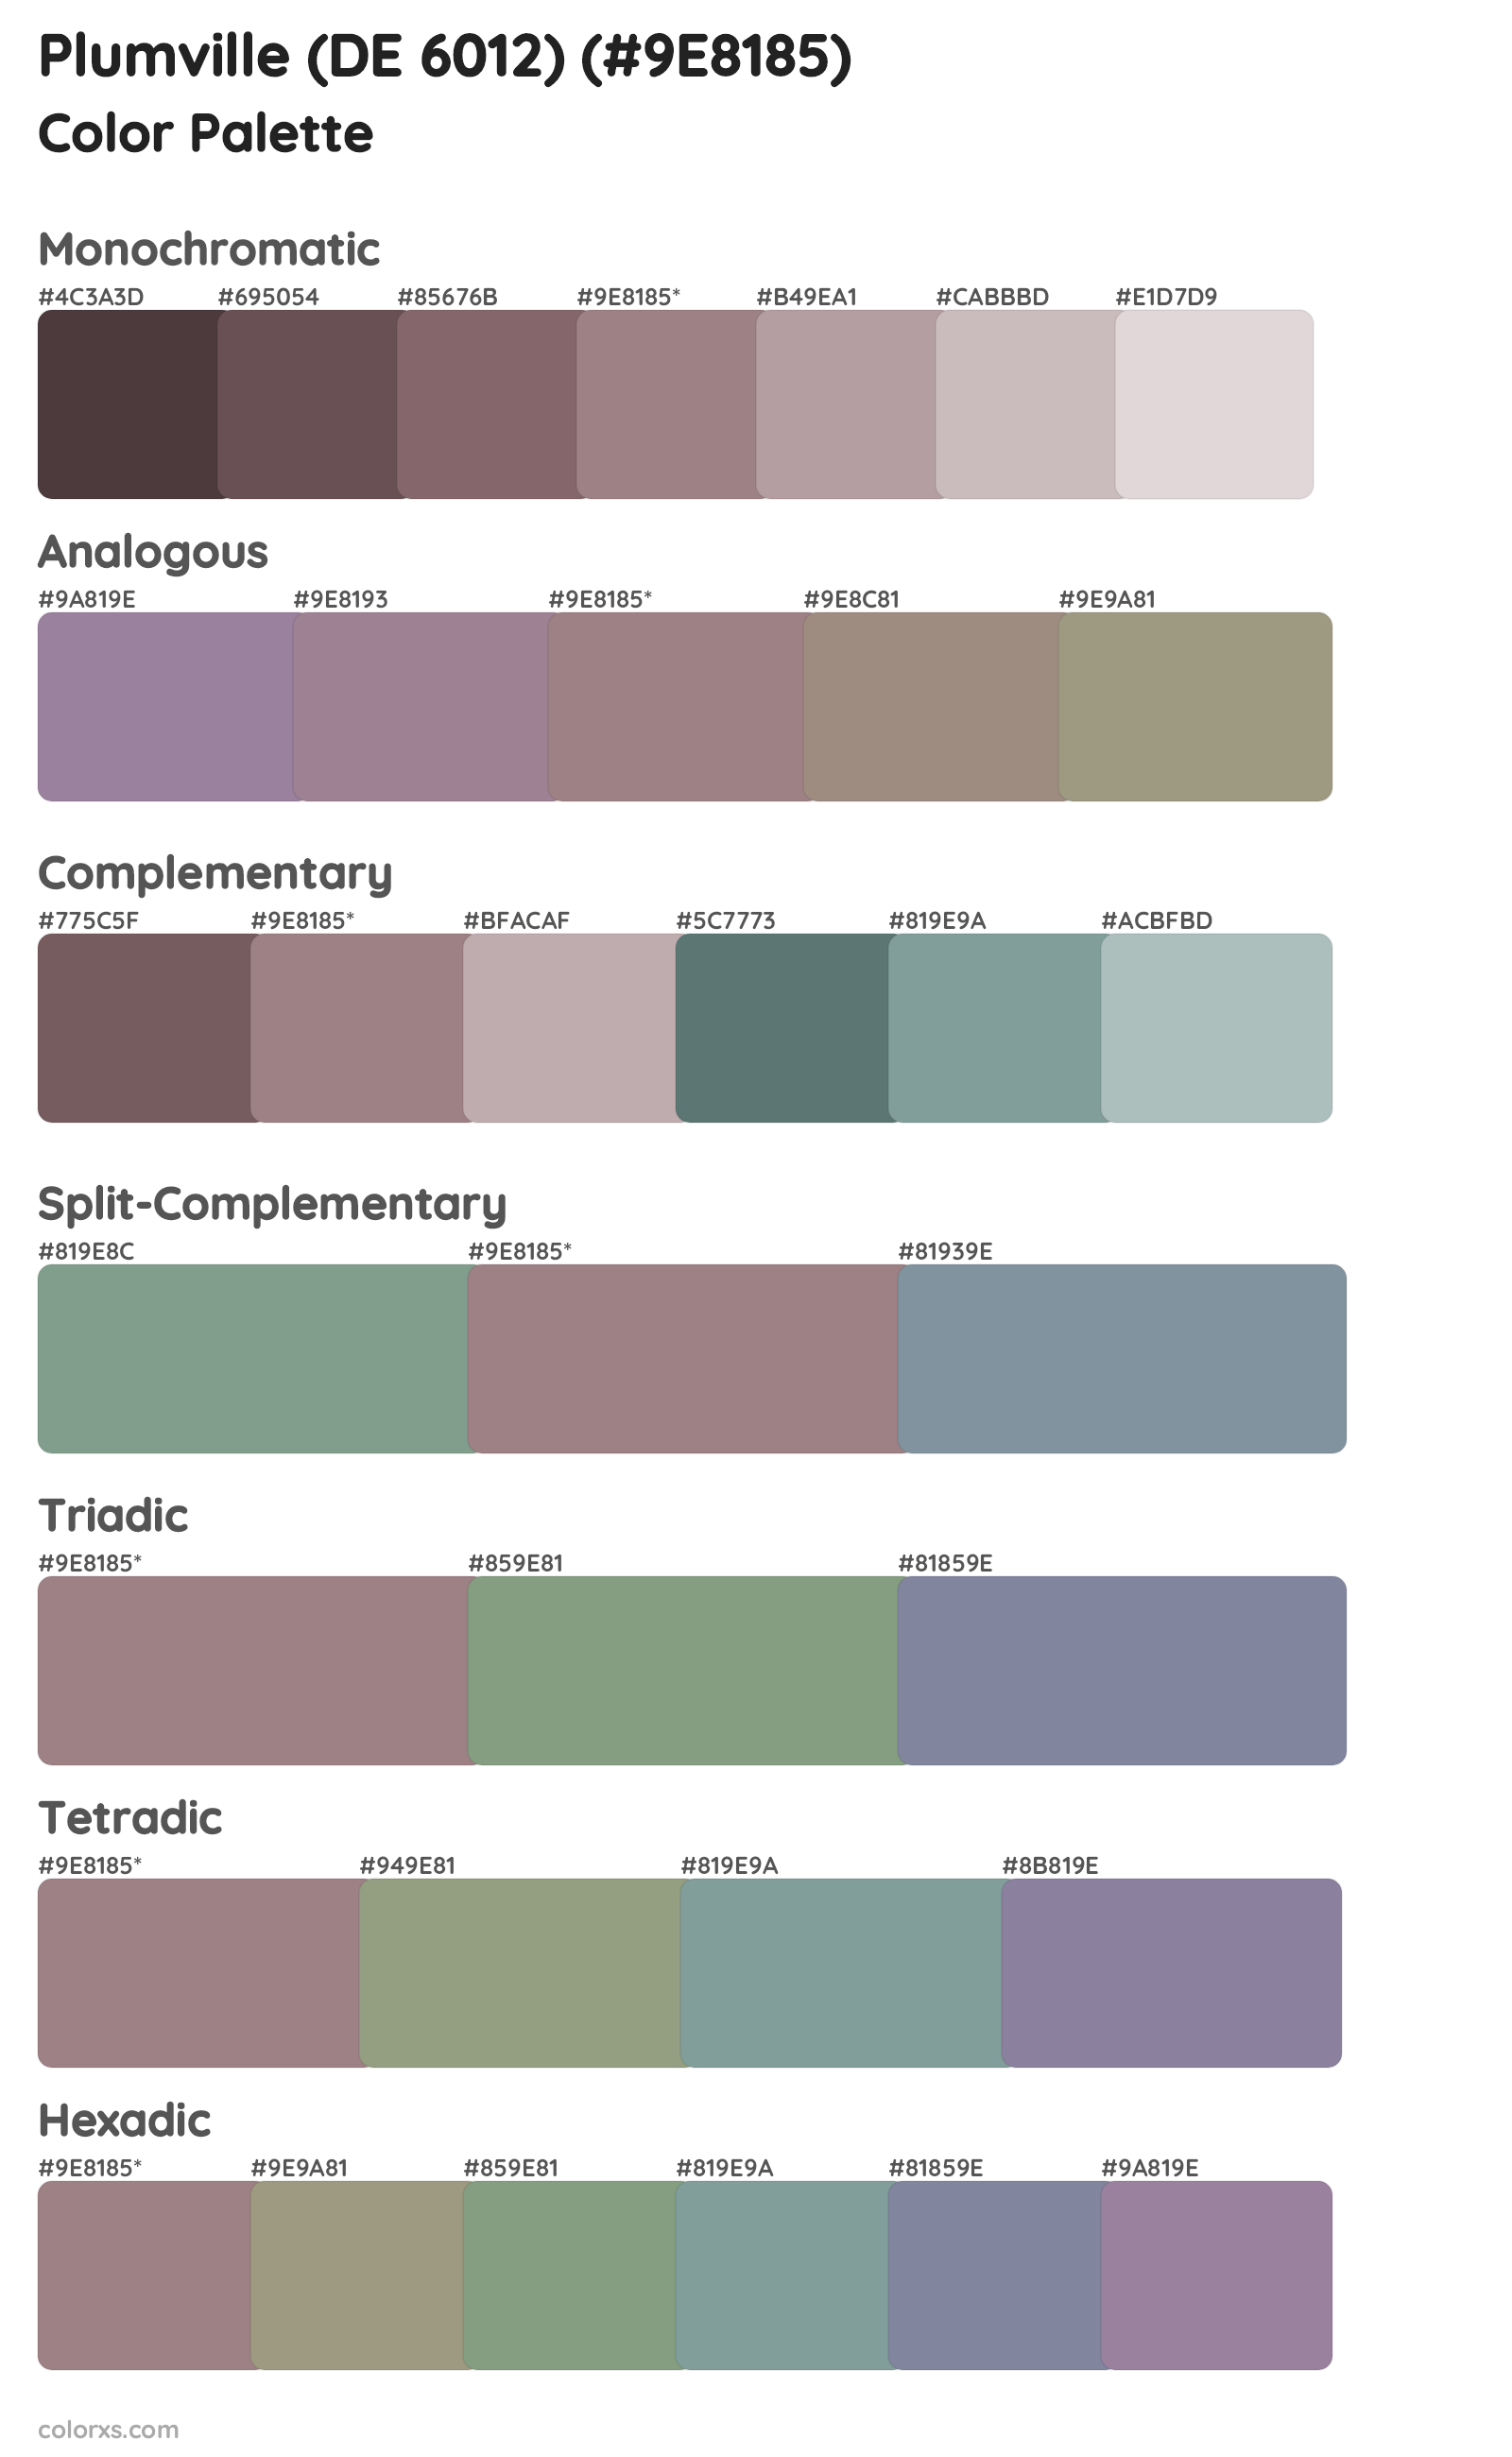 Plumville (DE 6012) Color Scheme Palettes